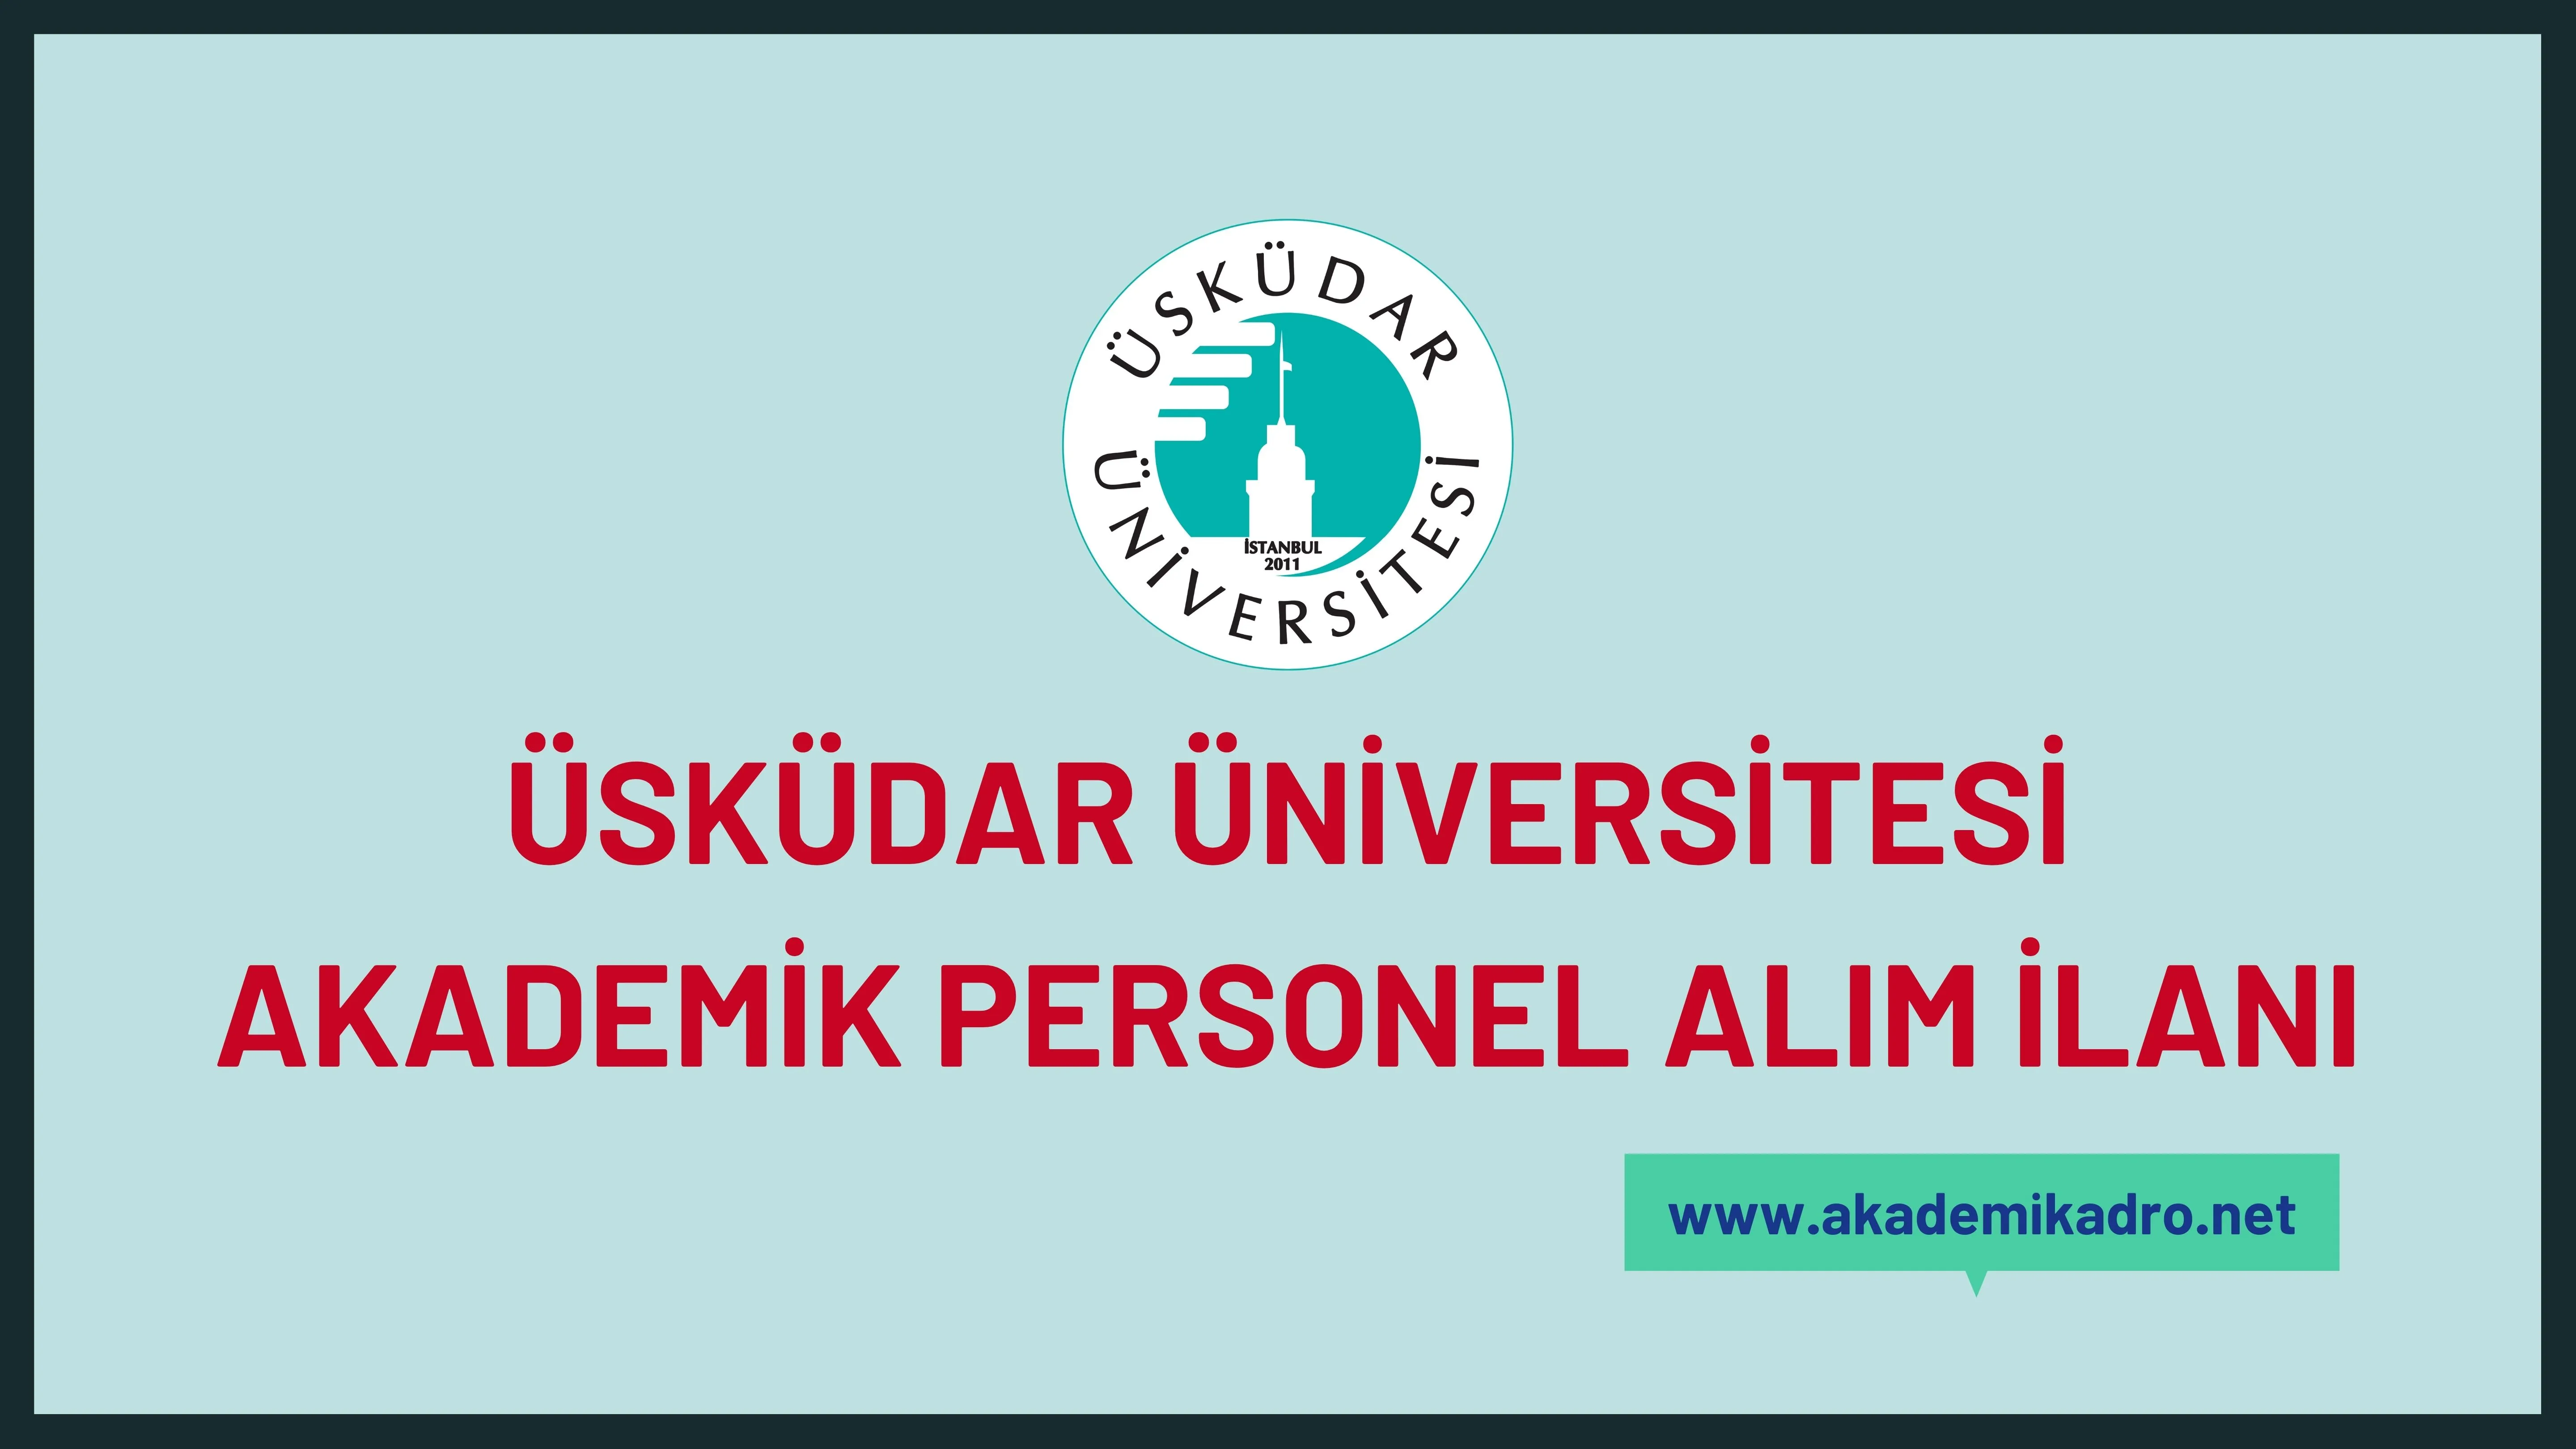 Üsküdar Üniversitesi birçok alandan 21 akademik personel alacak.